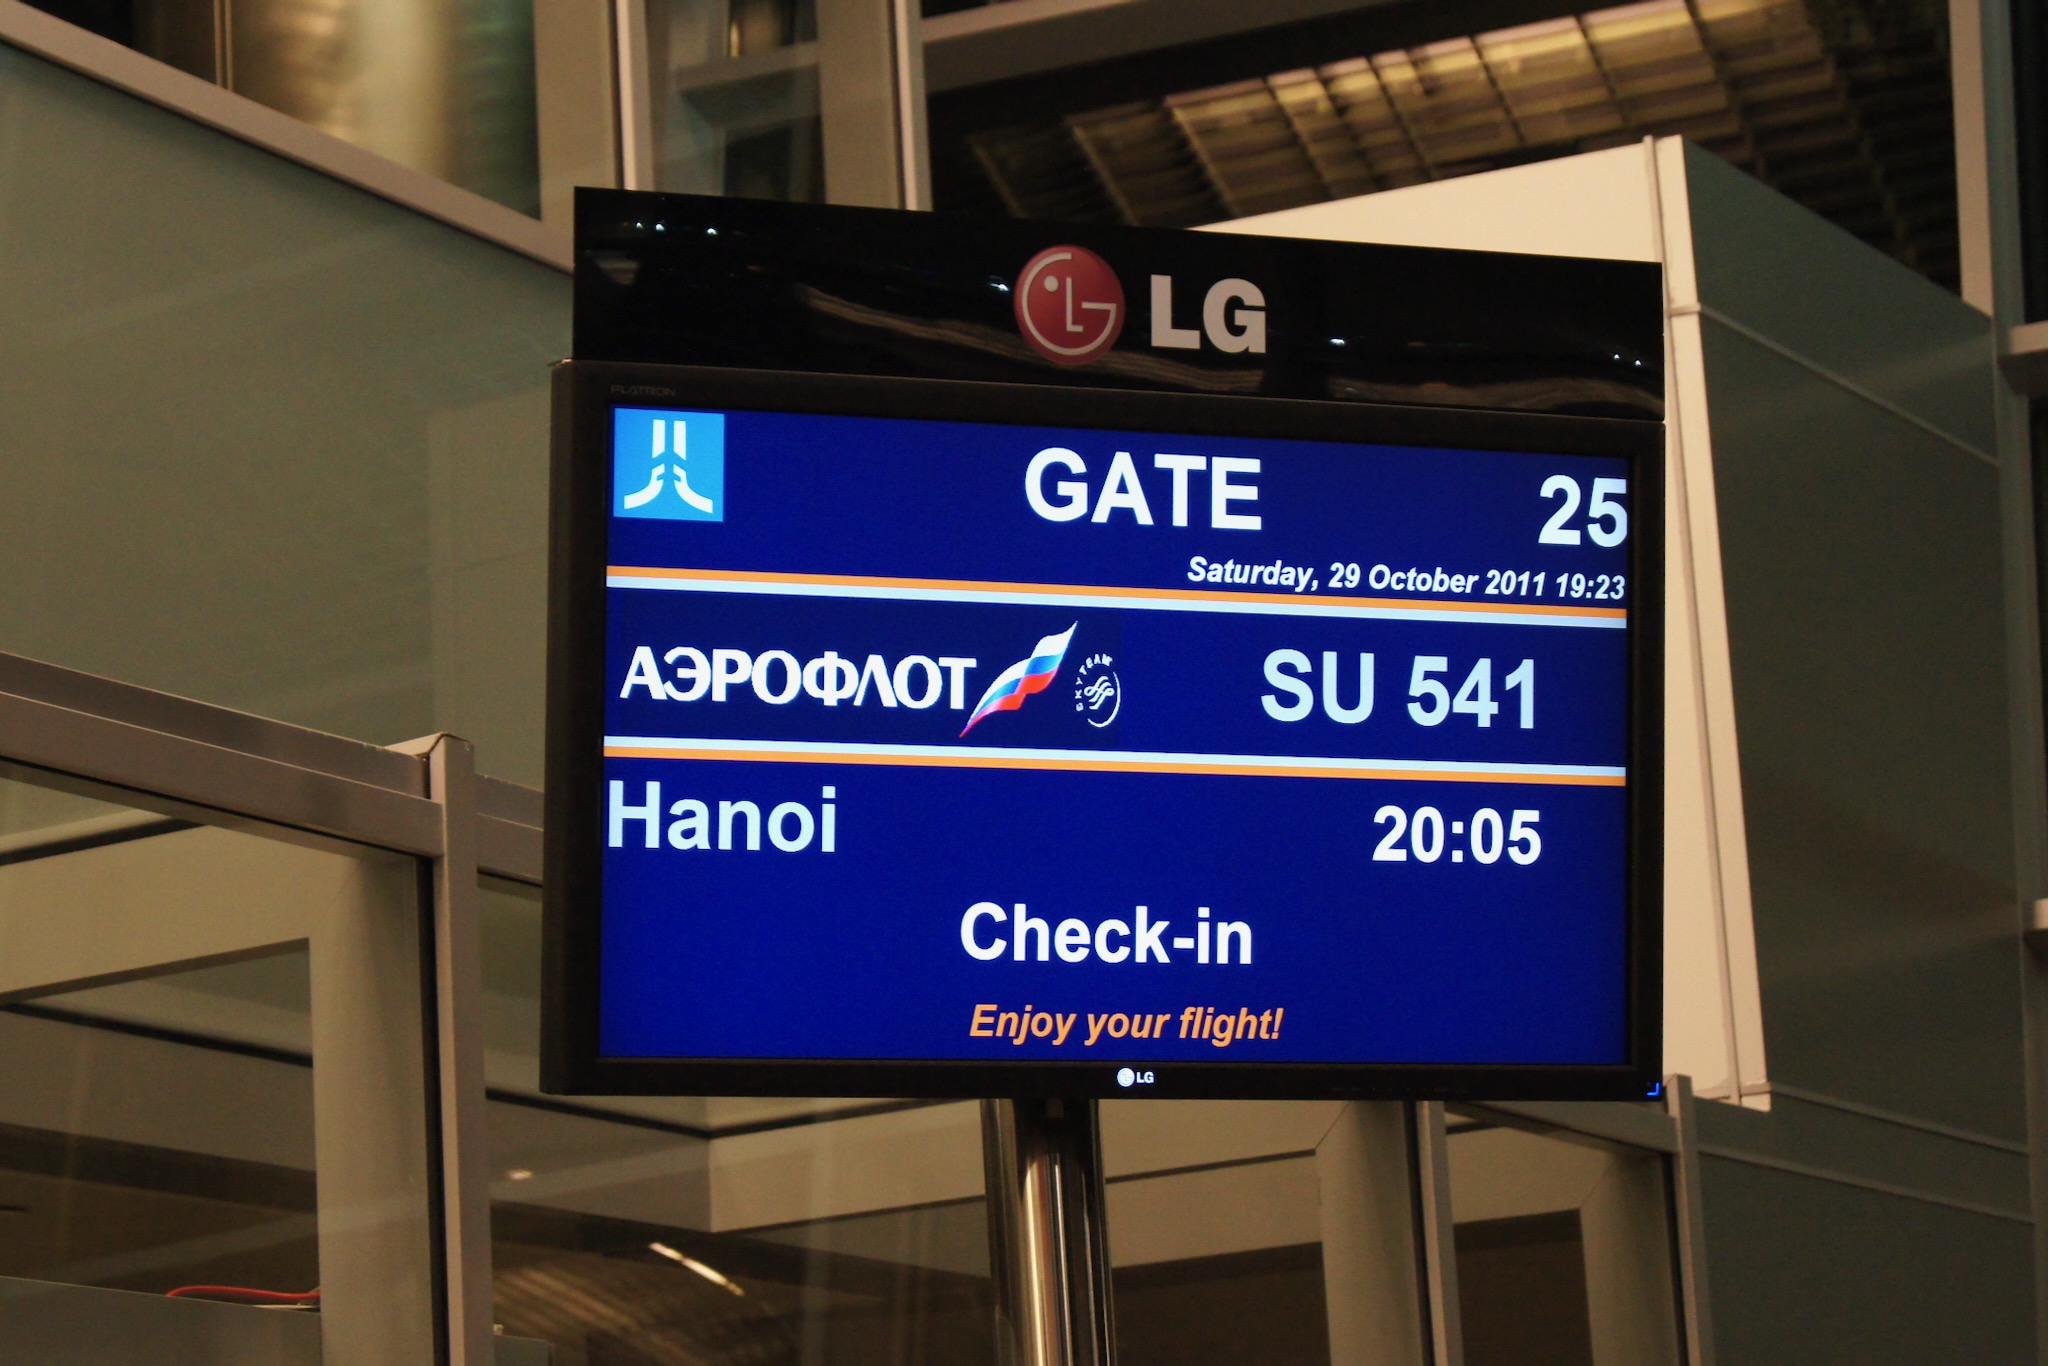 Mehr über den Artikel erfahren Aeroflot Economy Class Airbus A330-200 nach Hanoi